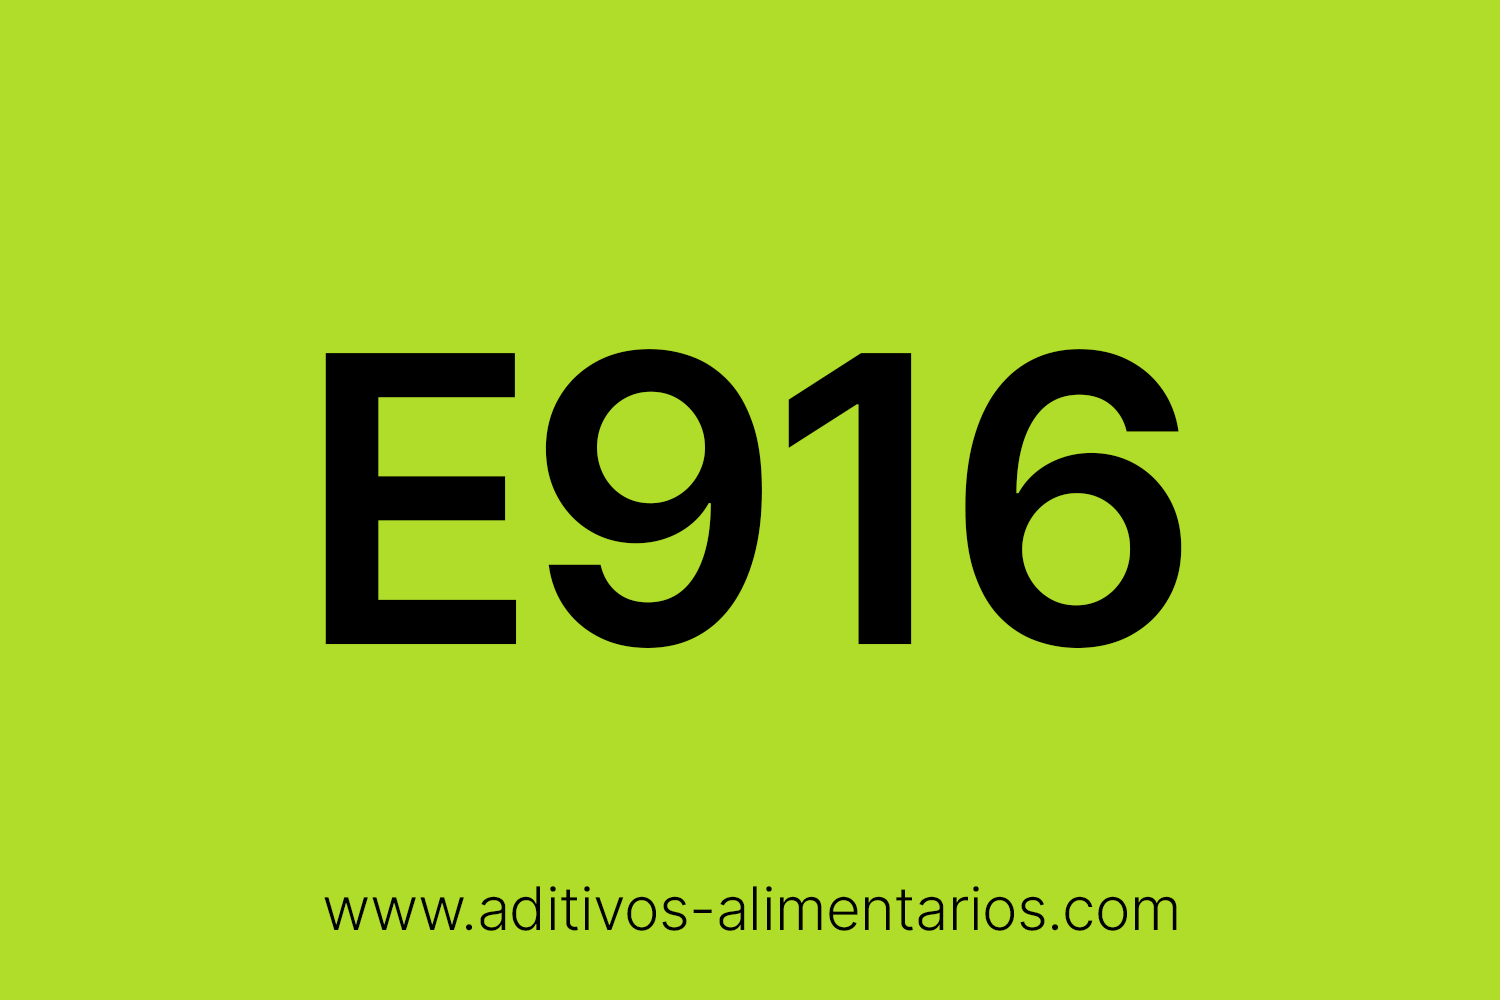 Aditivo Alimentario - E916 - Yodato Cálcico